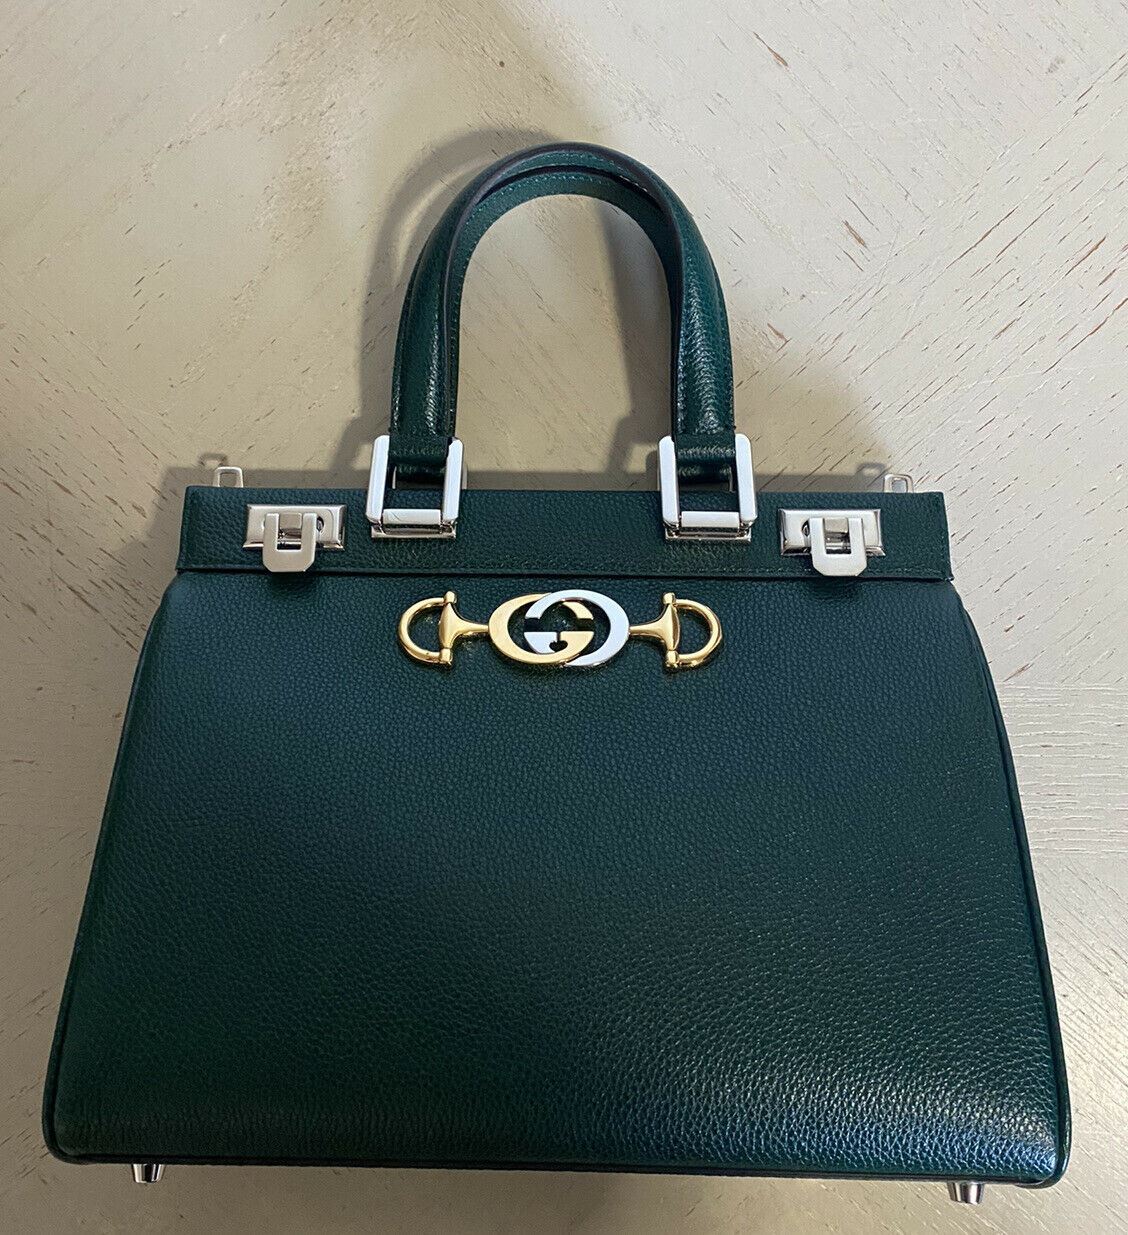 Новая маленькая кожаная большая сумка Gucci Zumi с ручкой сверху, зеленая 569712 за 3400 долларов США